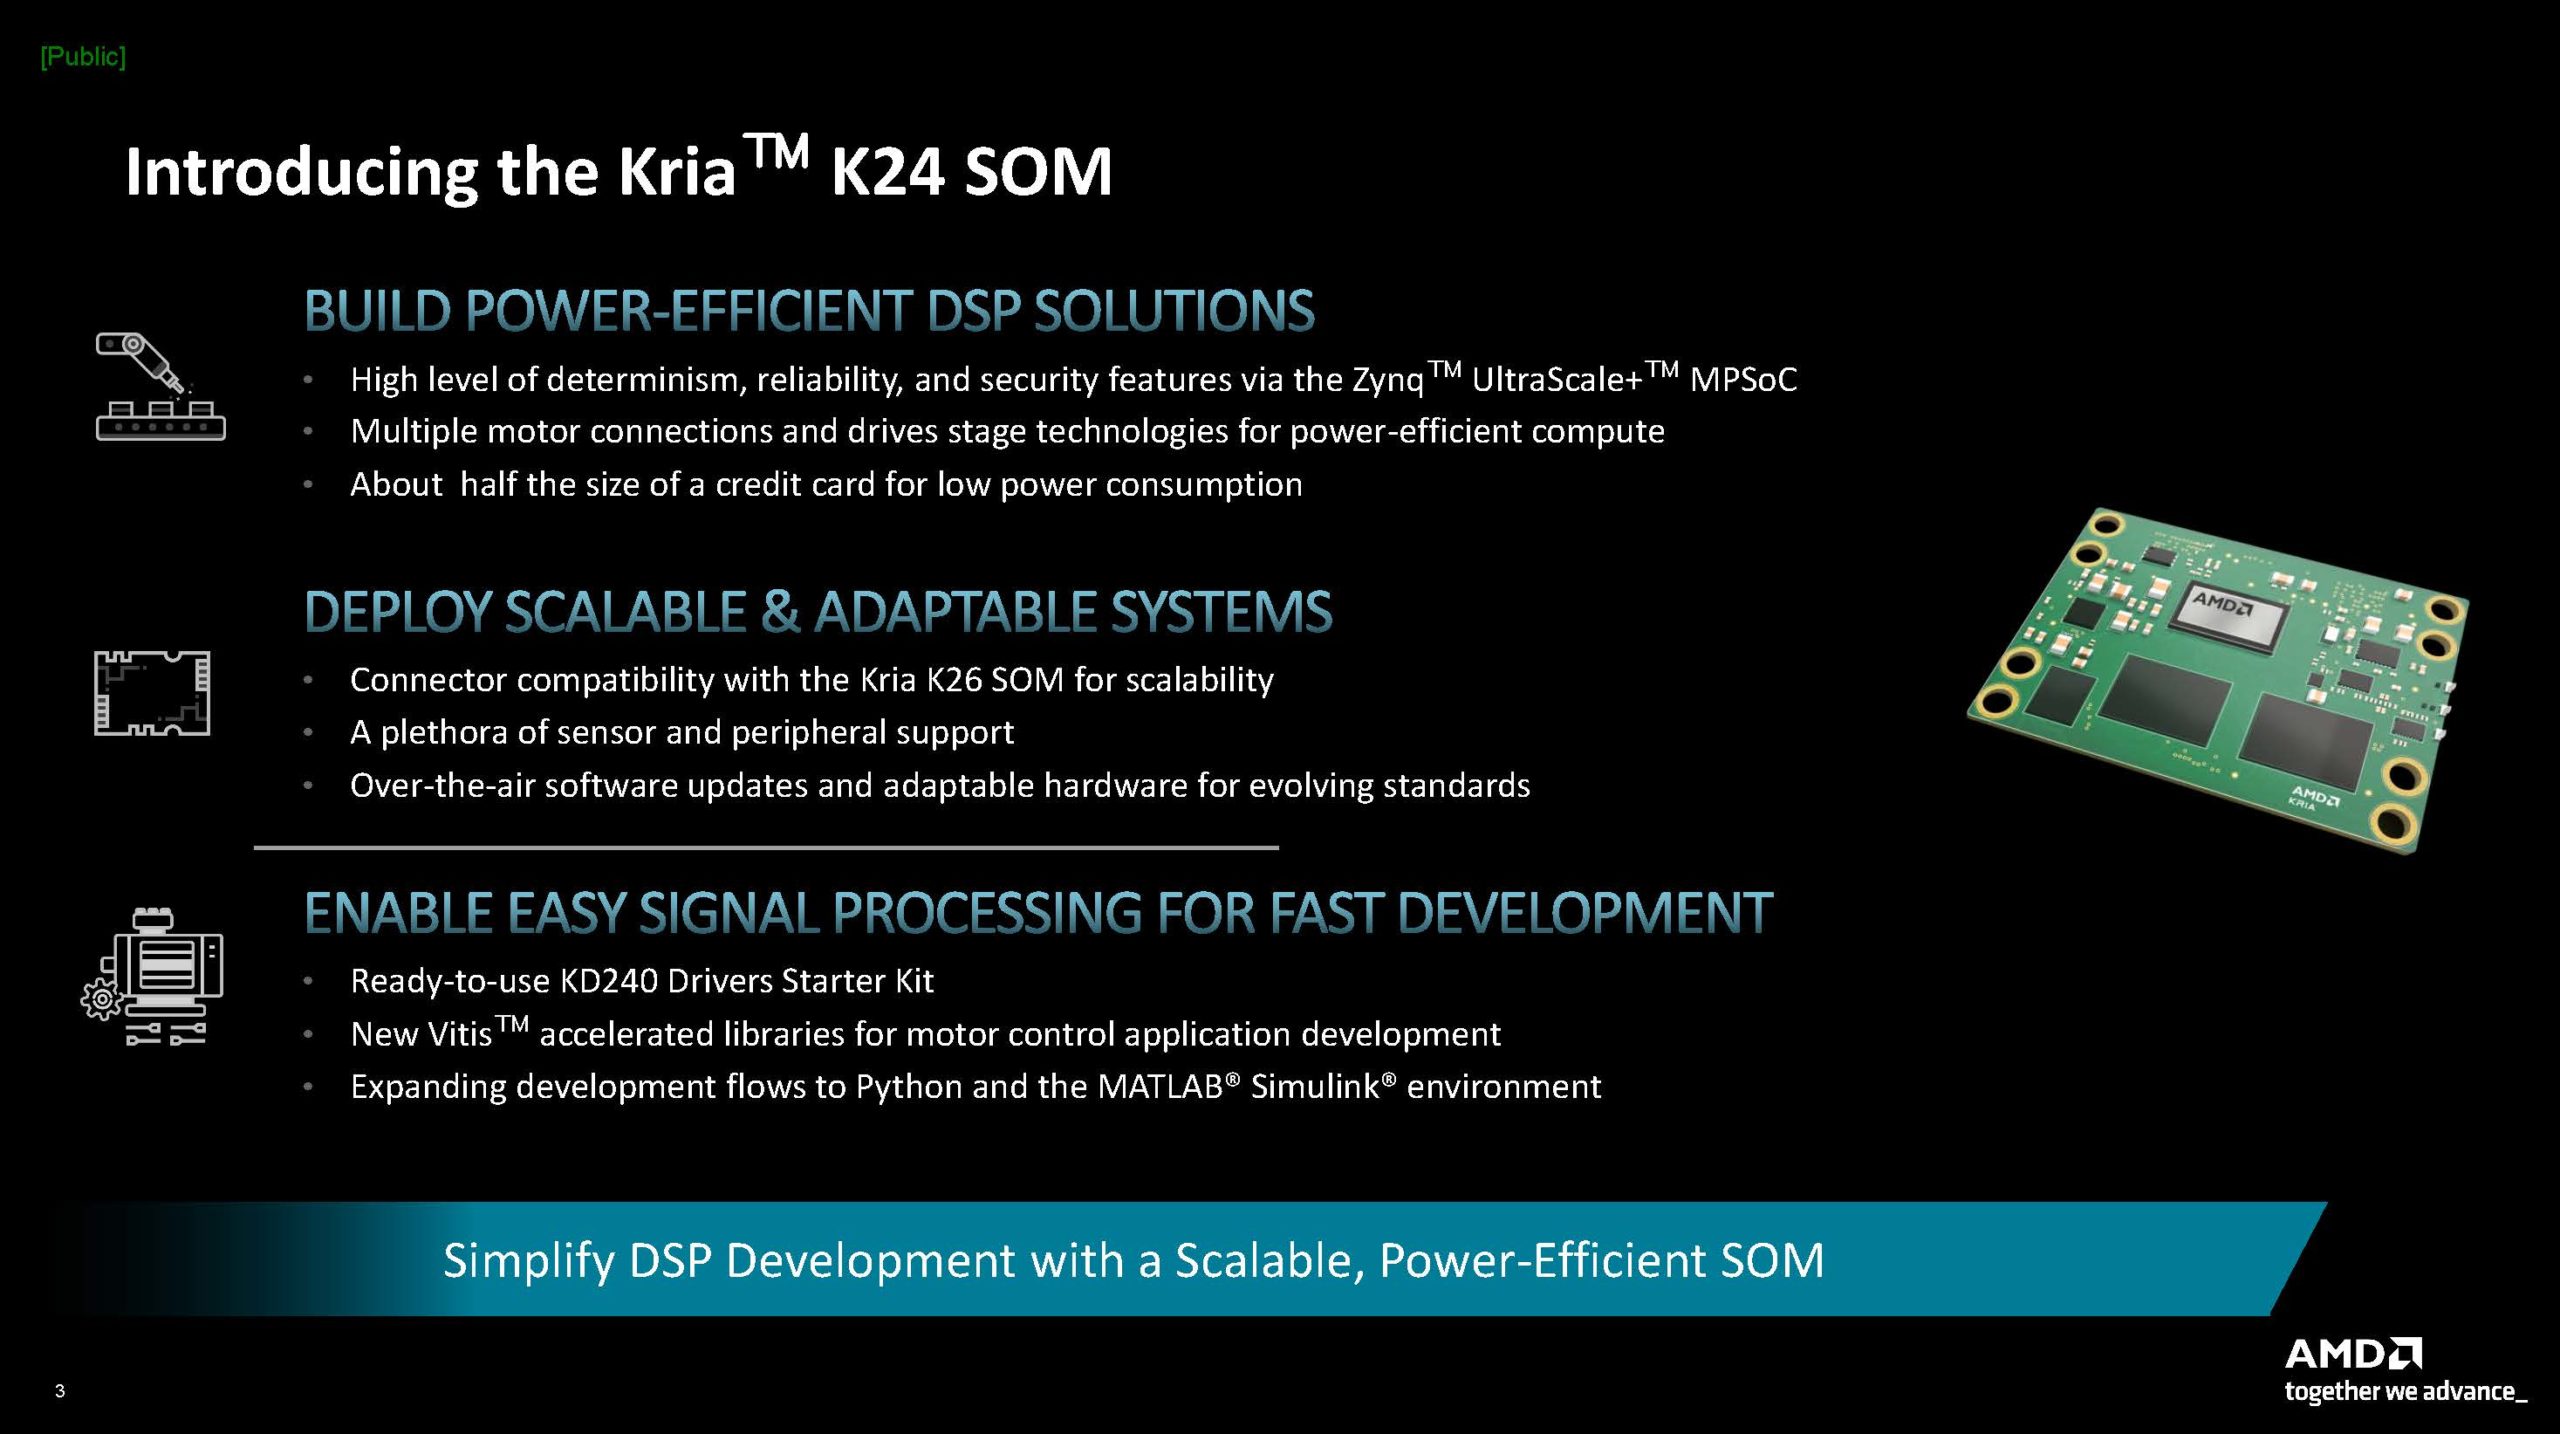 AMD Kria K24 Drives Starter Kit